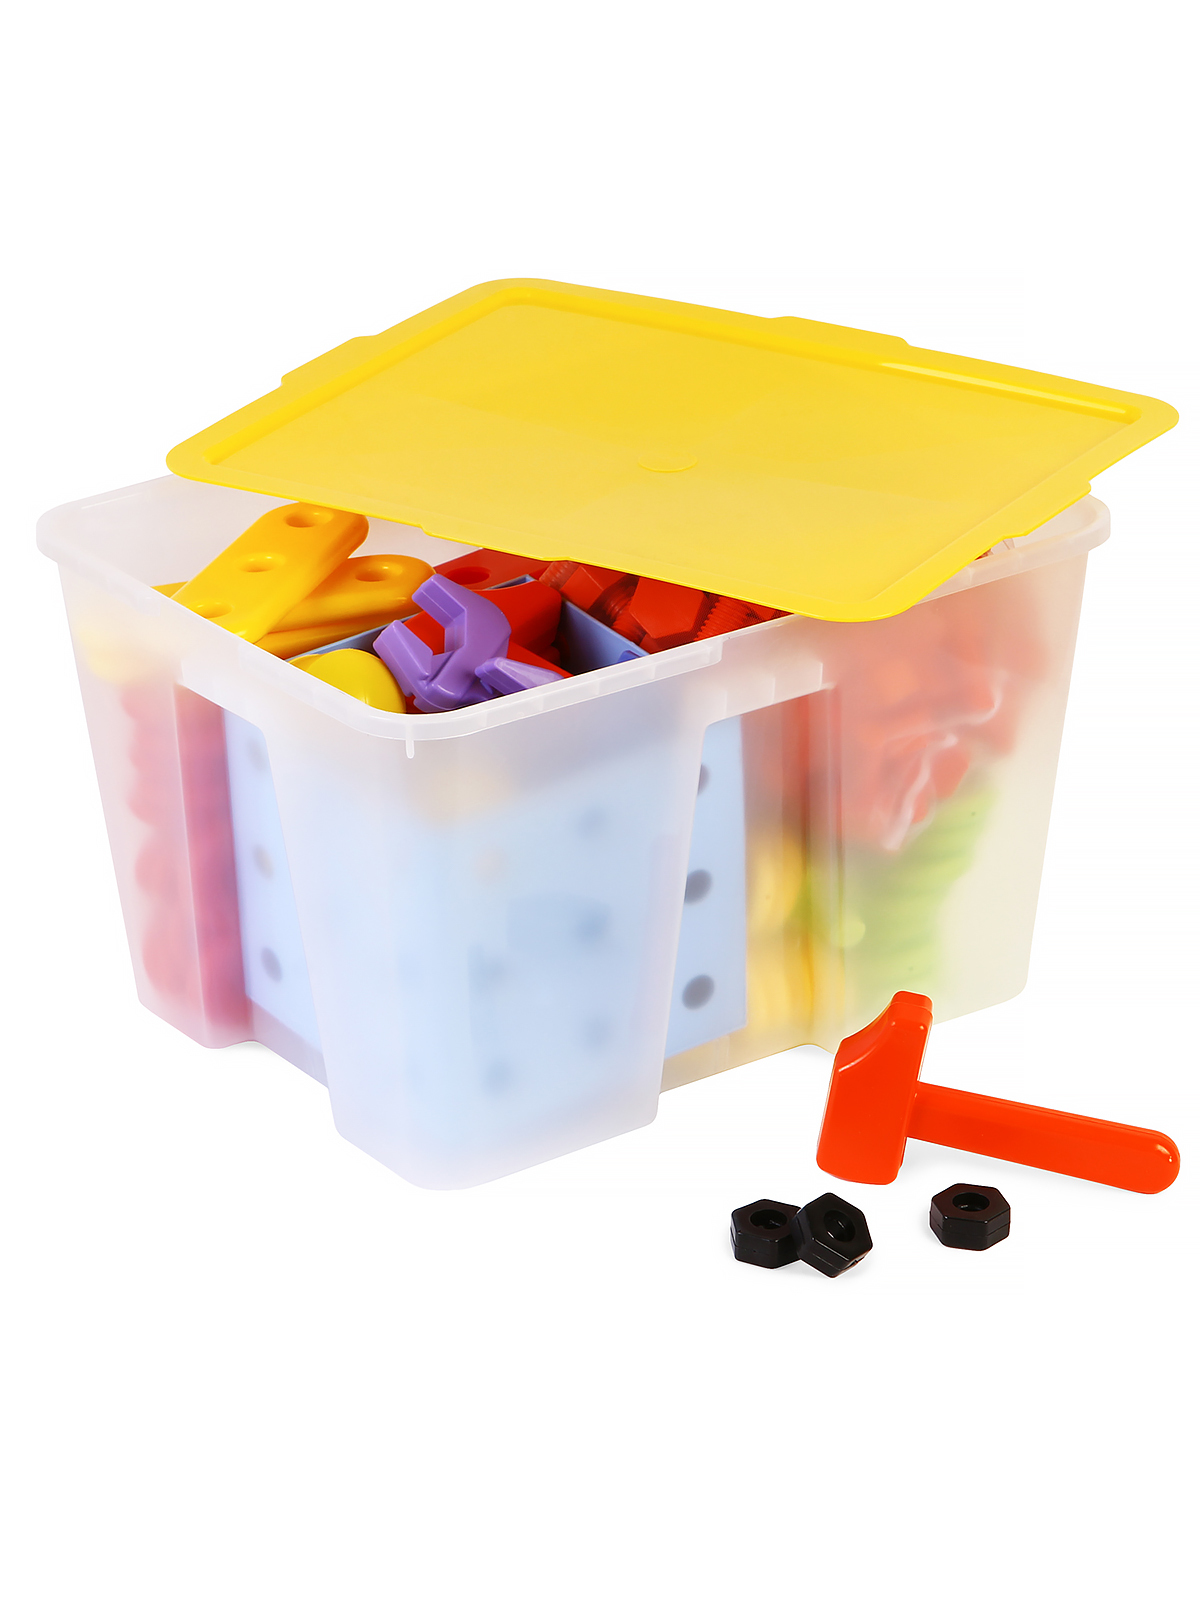 Стеллаж 1340 с игровым комплектом для детей 3-7 лет / система хранения Игротека